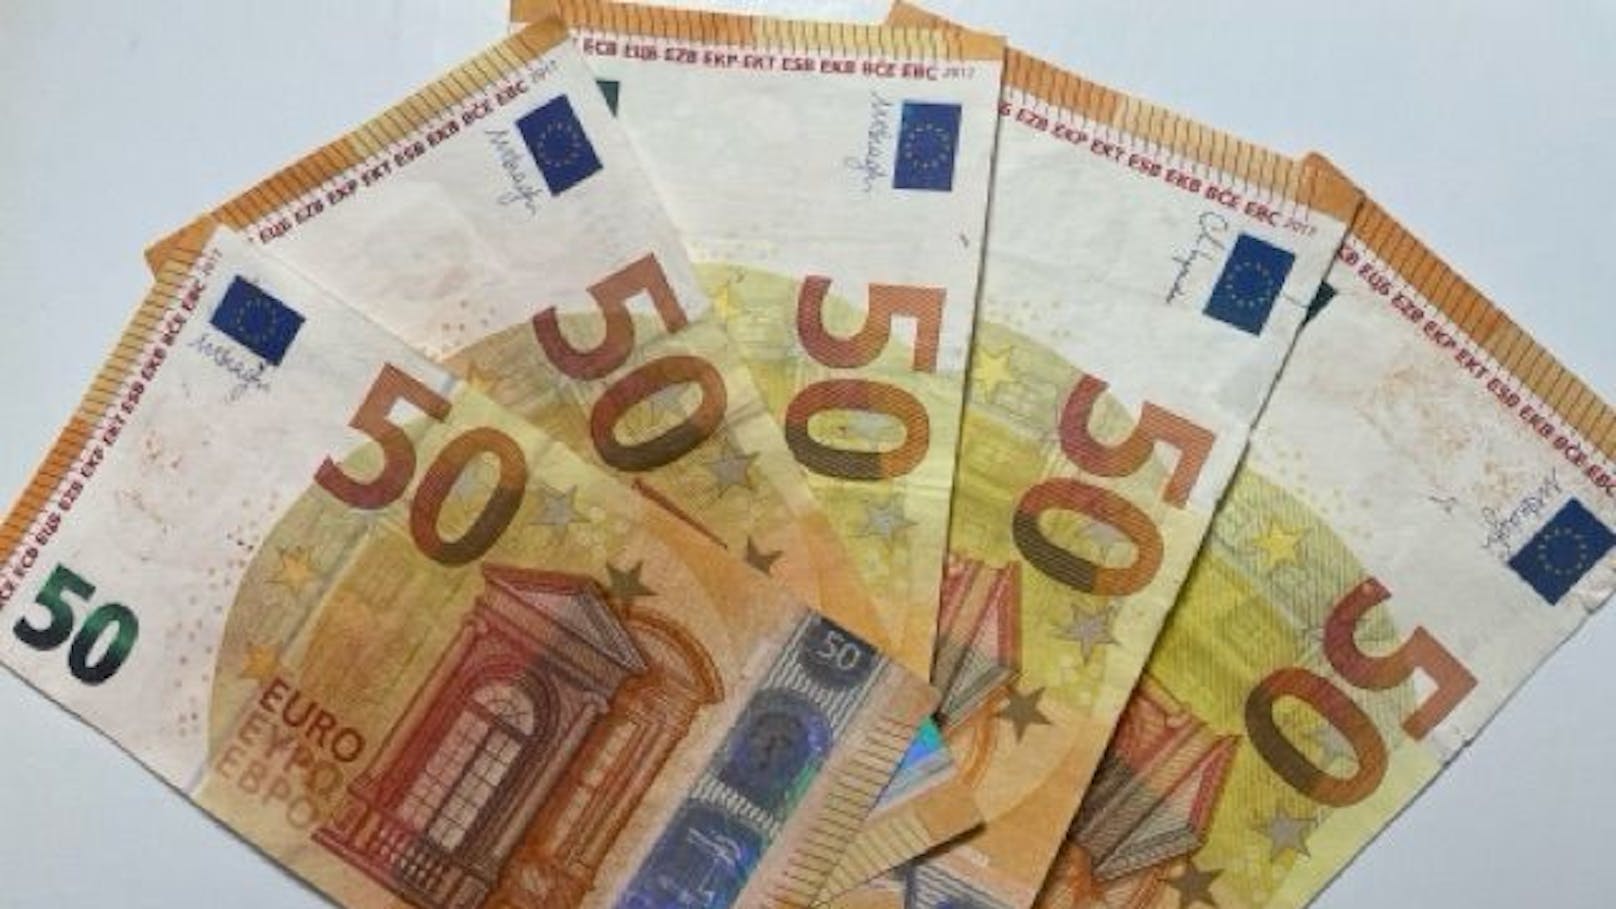 Die Österreichische Nationalbank erkannte die falschen Banknoten und informierte die Polizei.